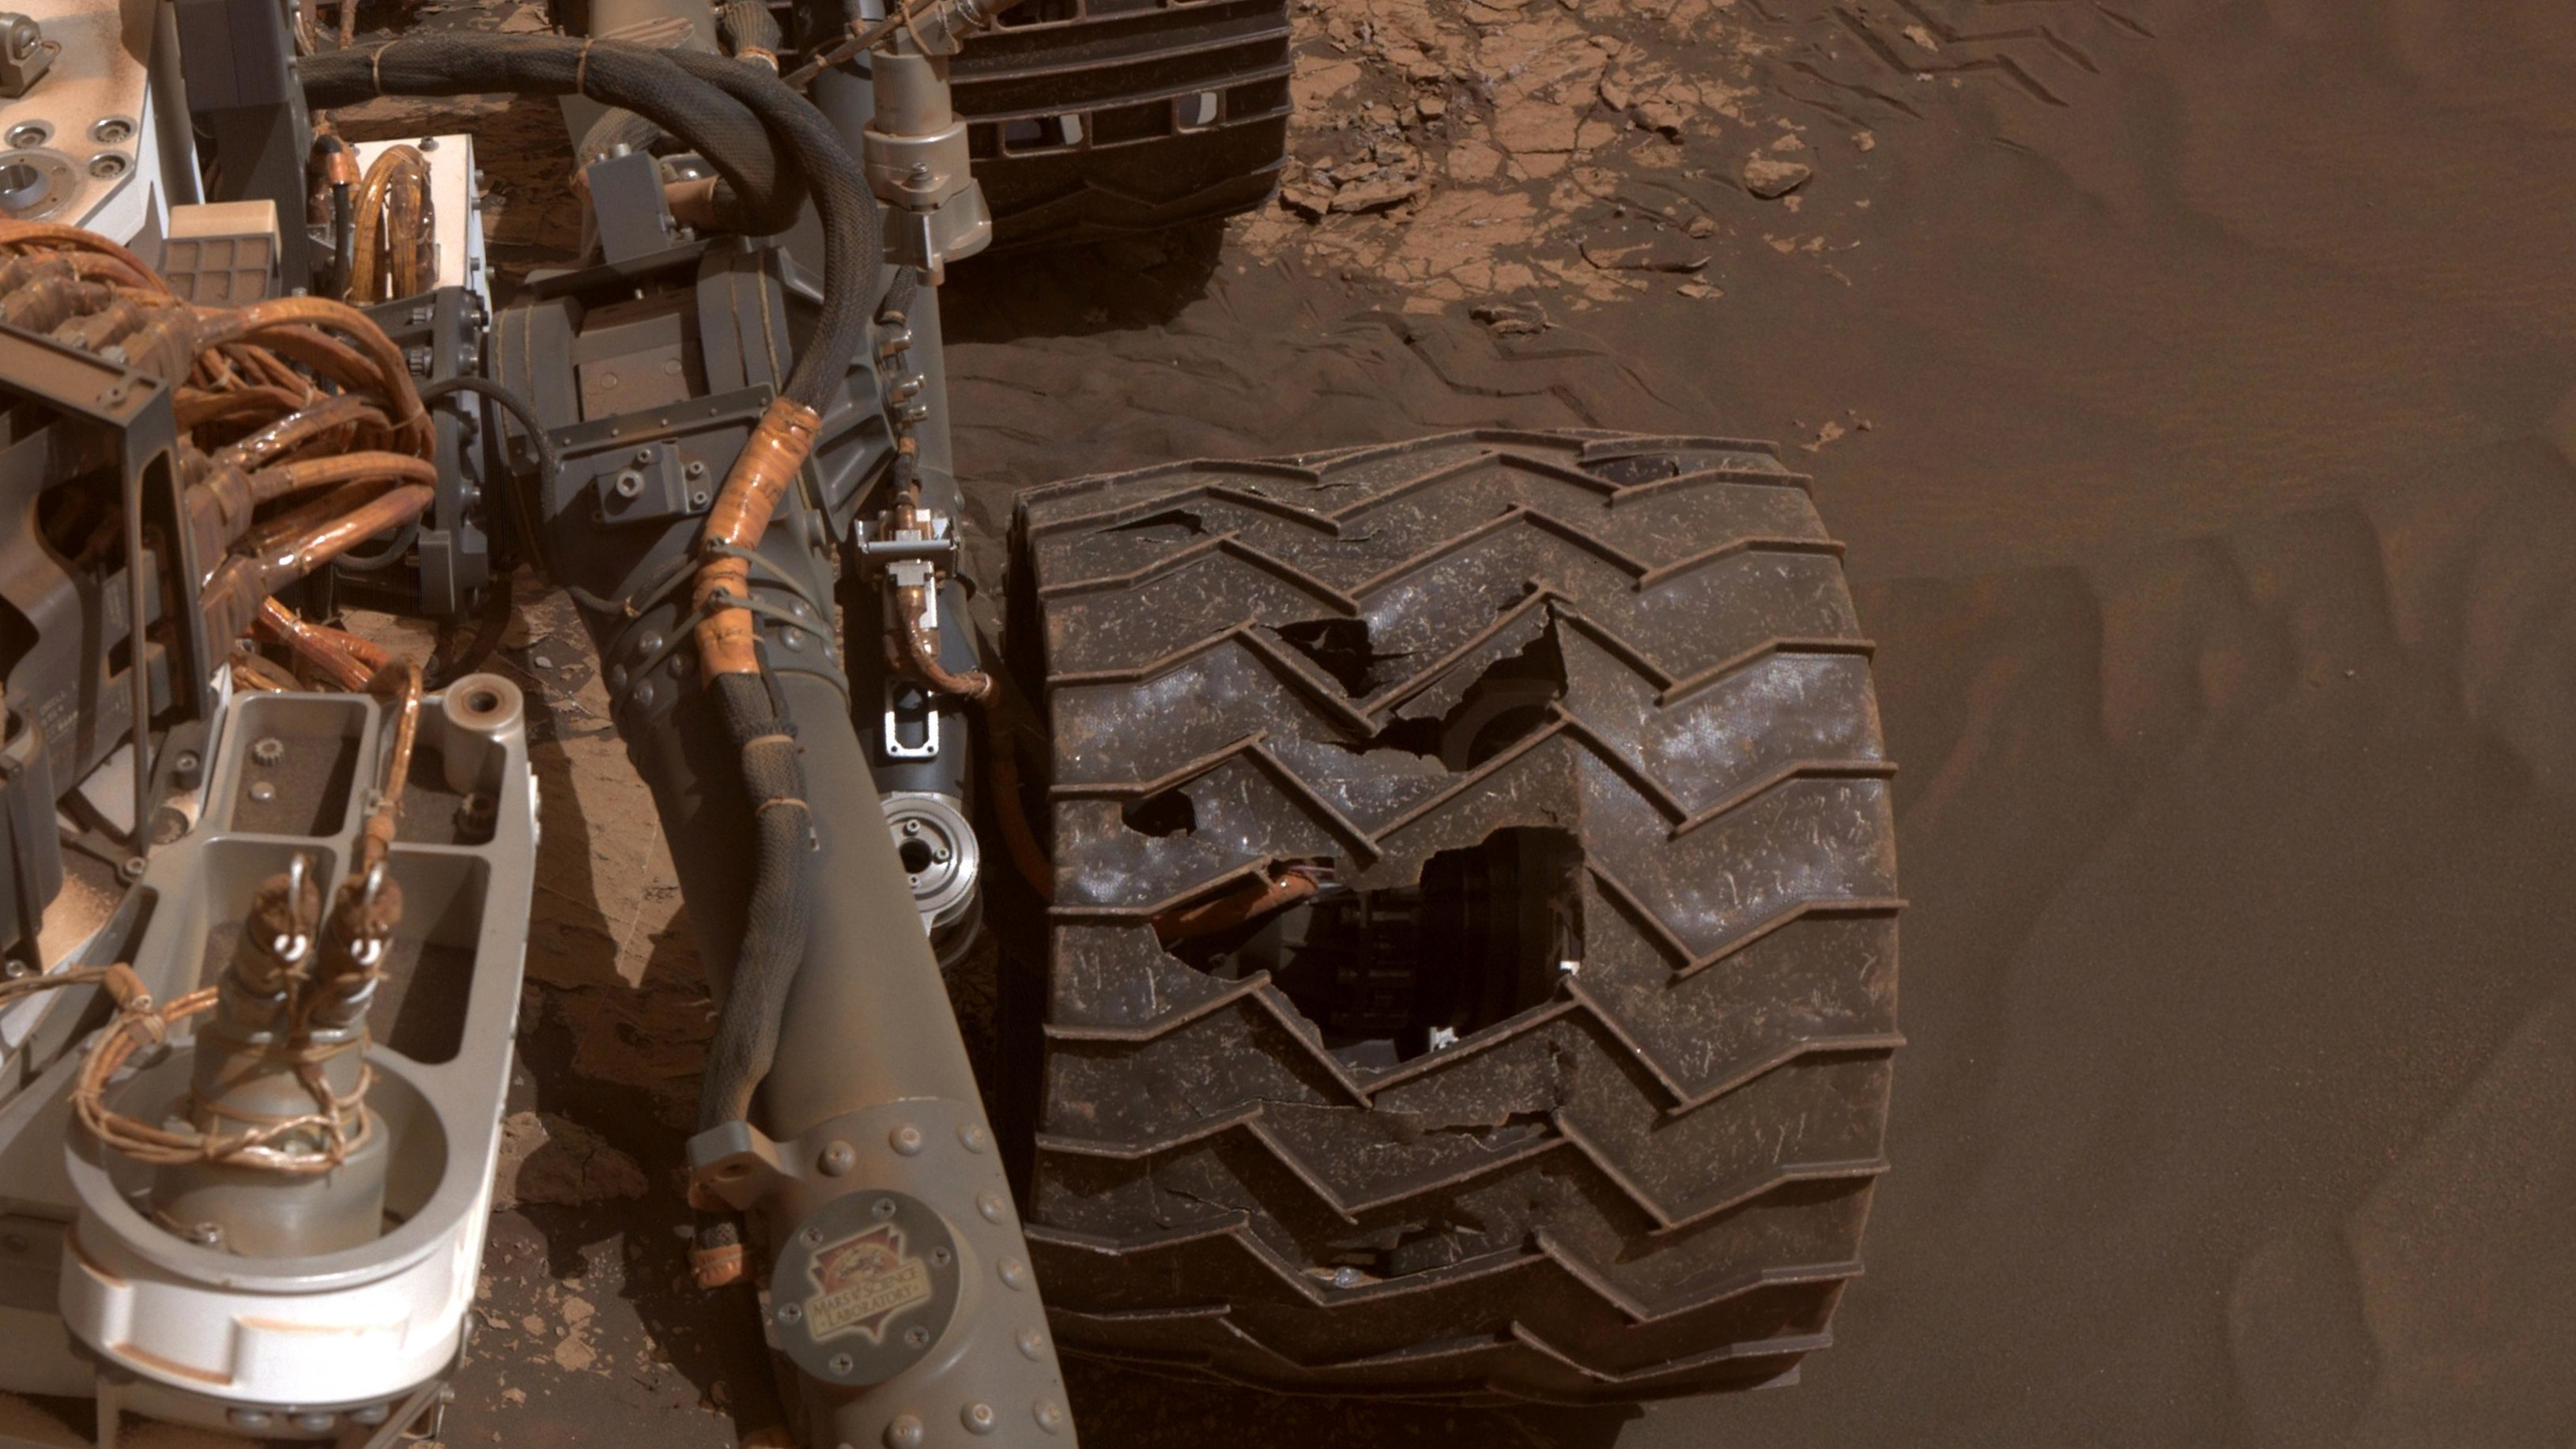 Thuật toán điều khiển bánh xe sao Hỏa lấy đà